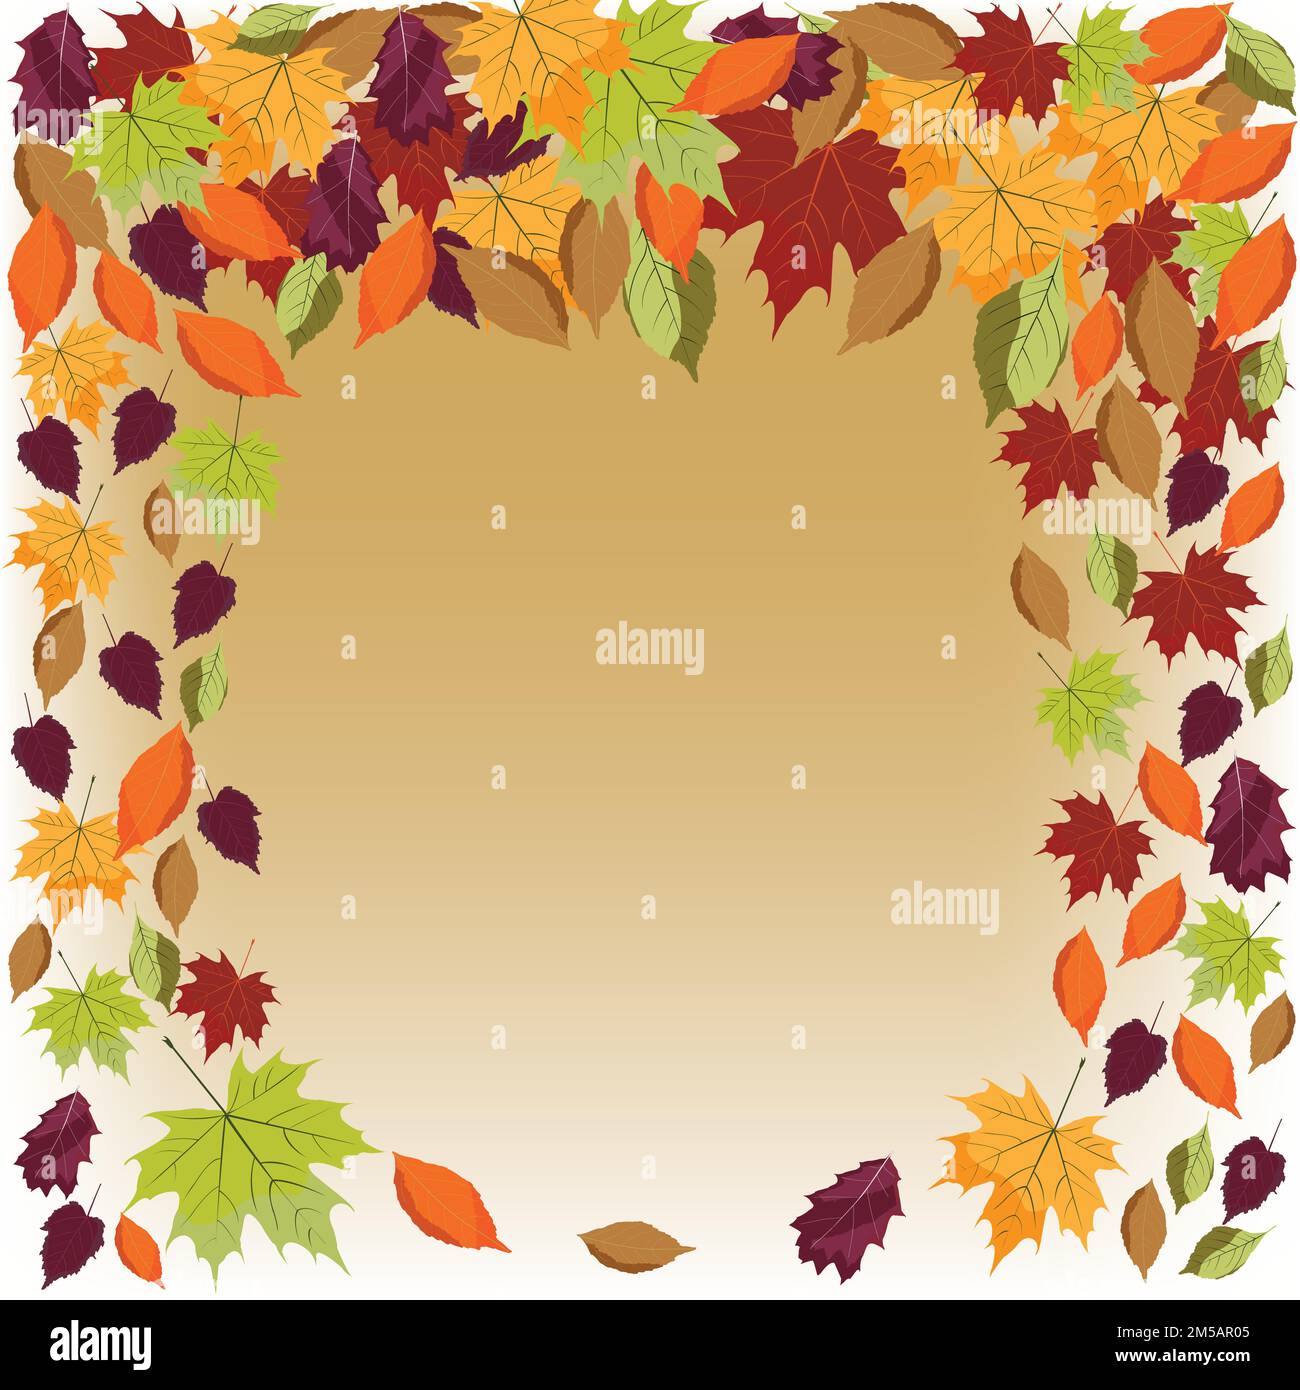 La caída de las hojas de otoño ilustración; Hoja cayendo; naranja, violeta, verde, marrón otoño hojas; venta; Ilustración del Vector